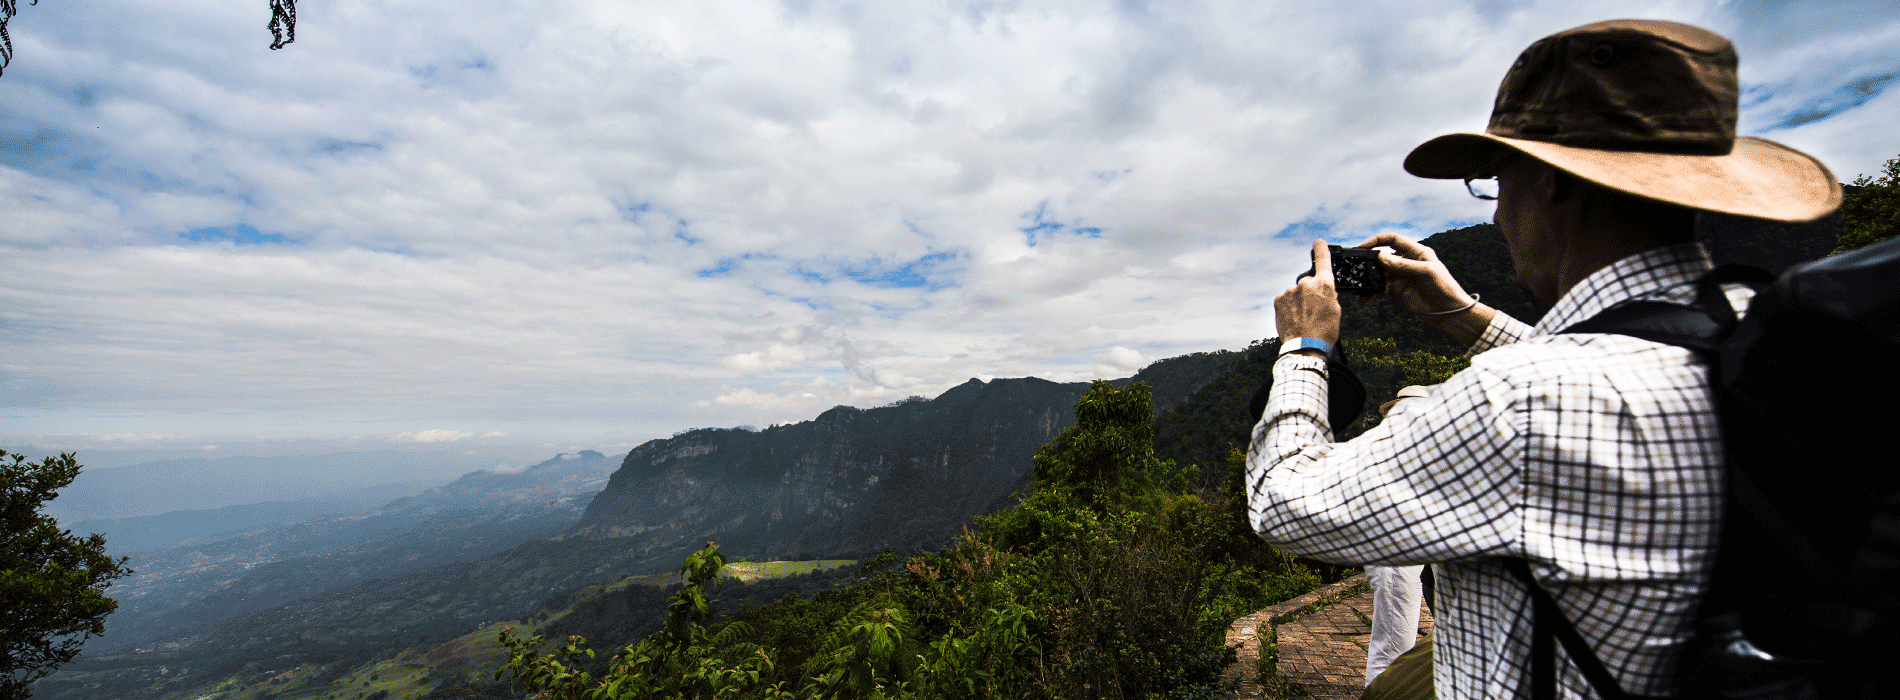 Turista tomando fotografía de paisaje Colombiano 